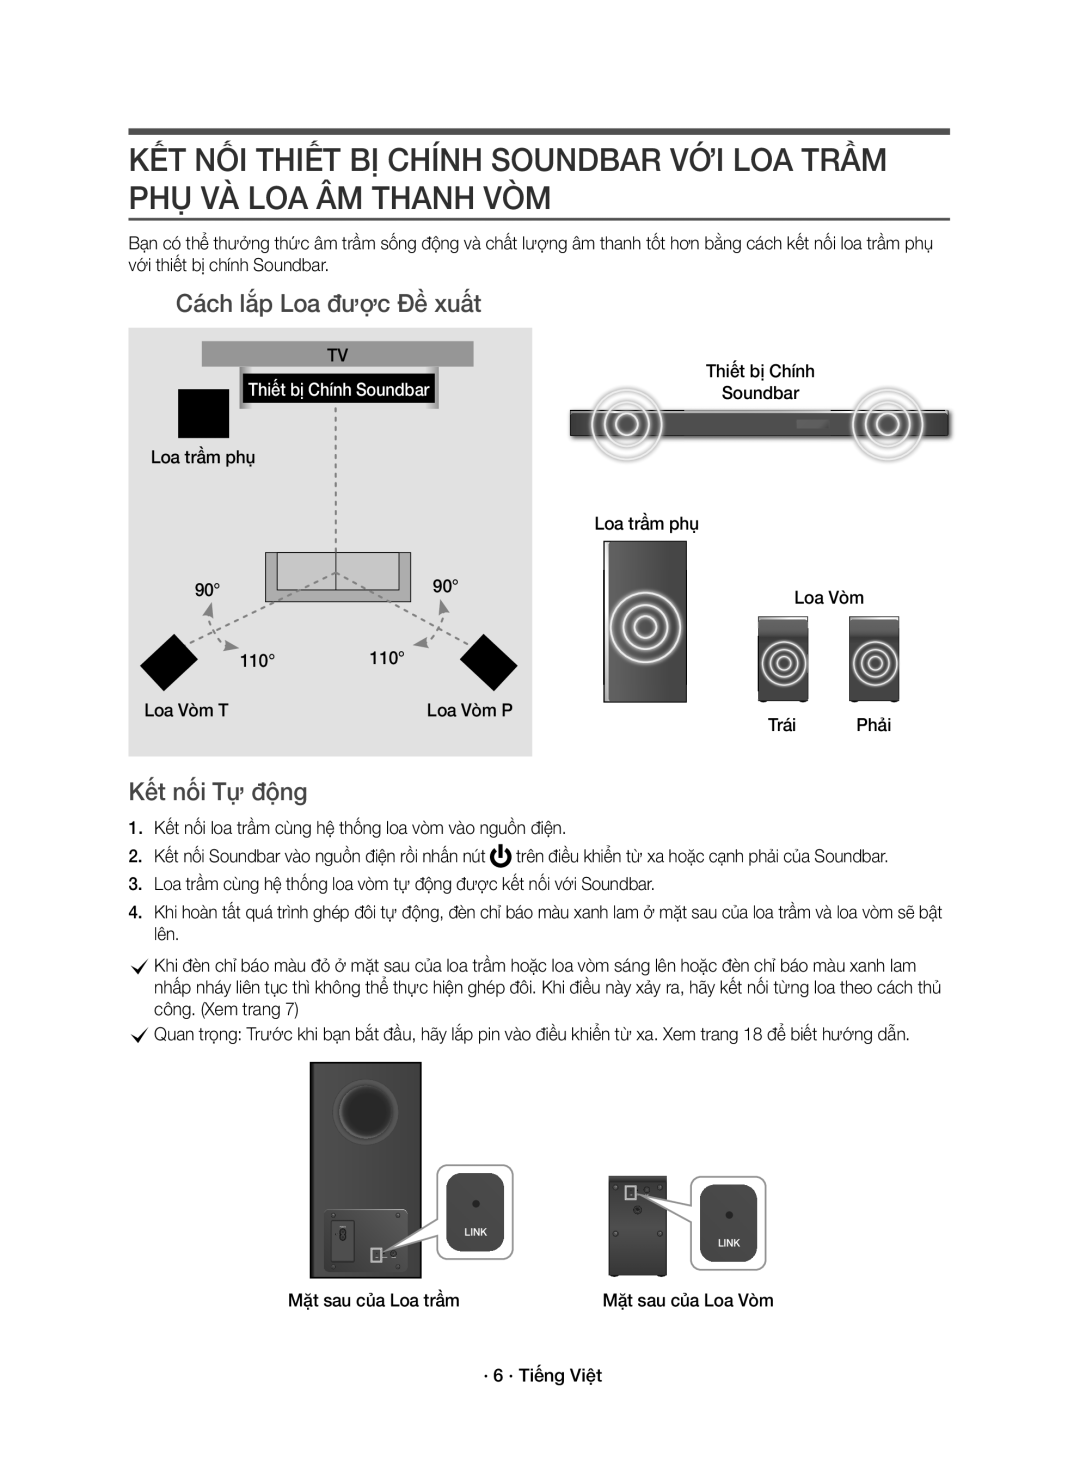 Samsung HW-K950/XV Cách lắp Loa được Đề xuất, Kết nối Tự động, Loa trầm phụ 110 Loa Vòm Loa Vòm T Loa Vòm P Trái Phải 